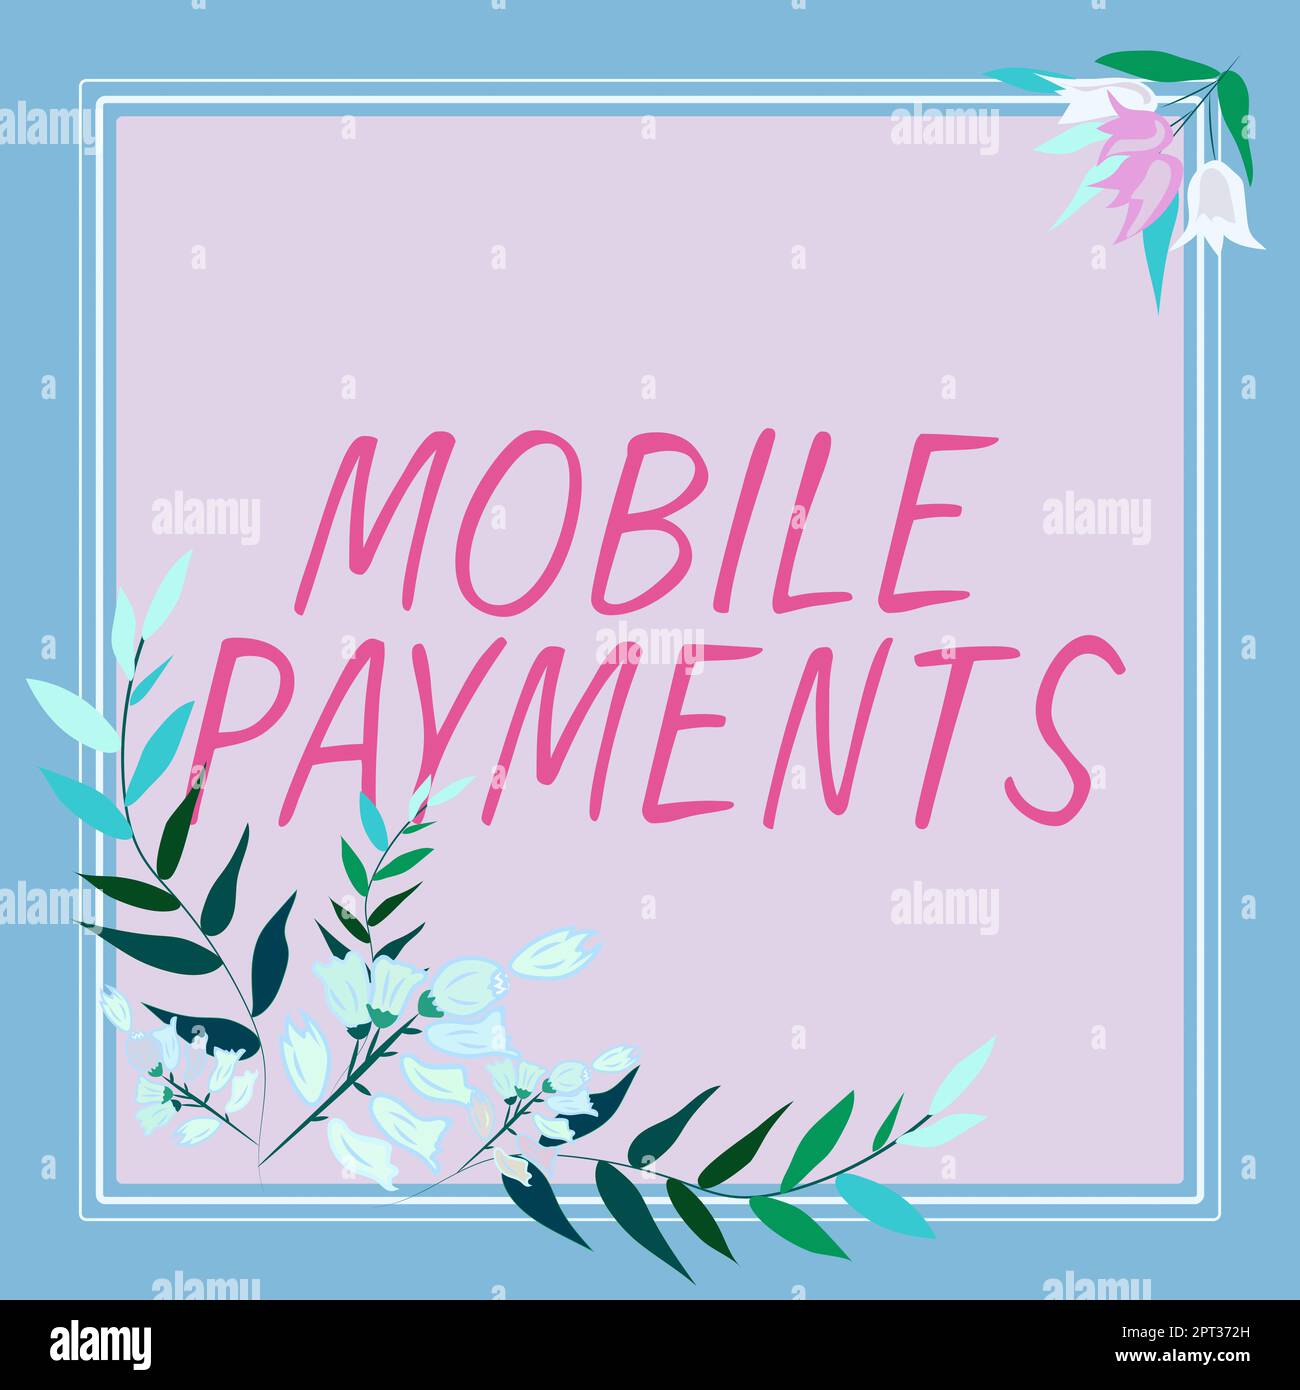 Handschrift Text Mobile Payments, Word für Finanztransaktionen über ein Smartphone verarbeitet Stockfoto